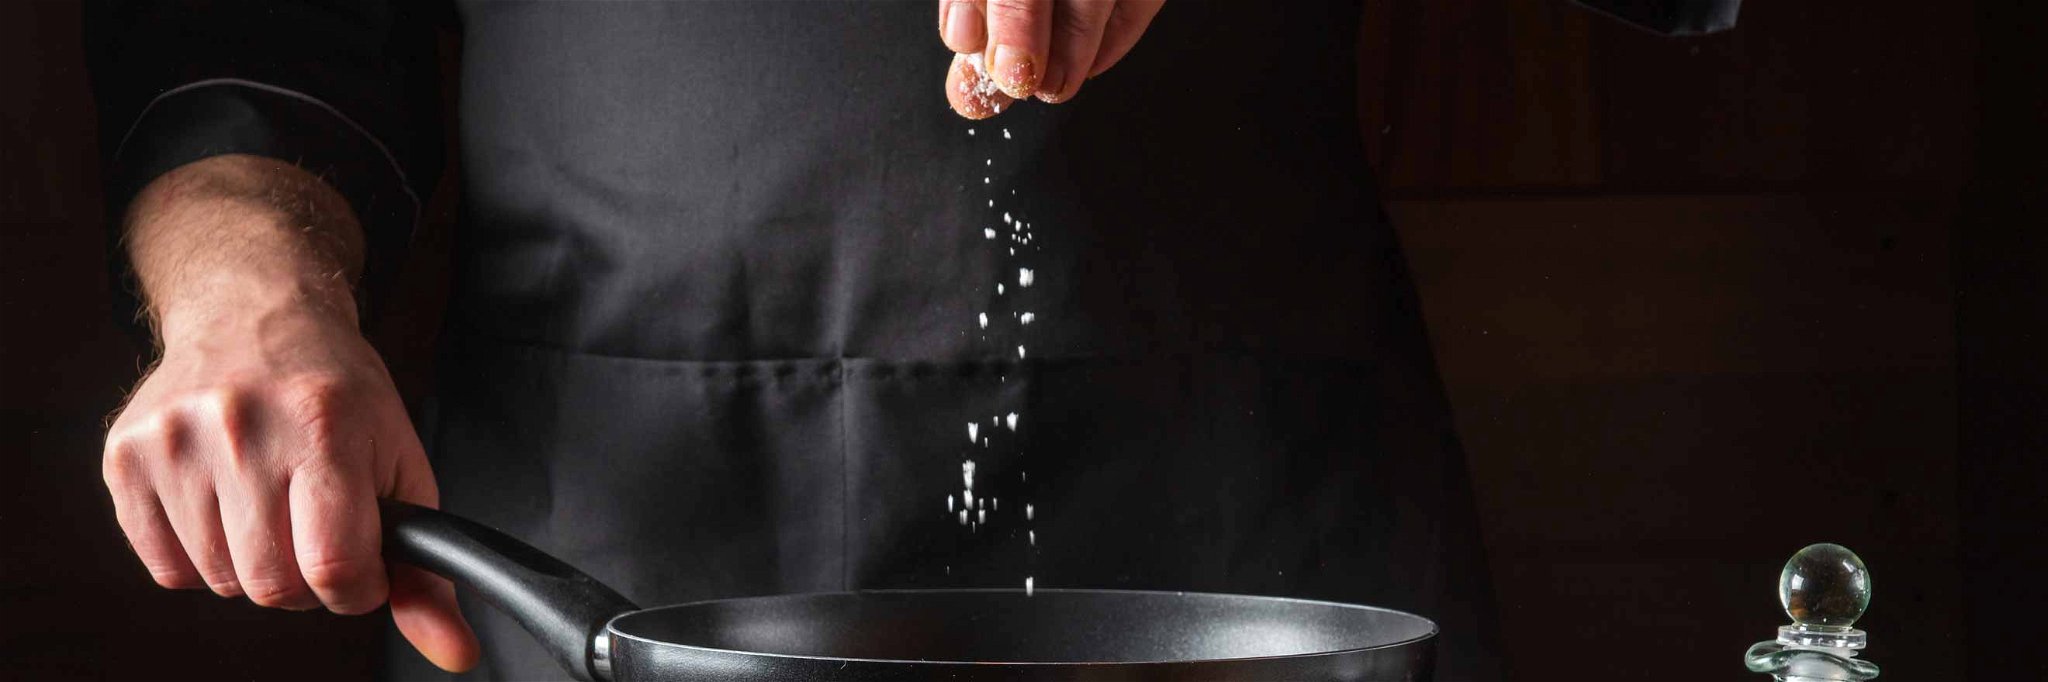 Die richtige Prise Salz macht aus einfachen Produkten wahre Köstlichkeiten.